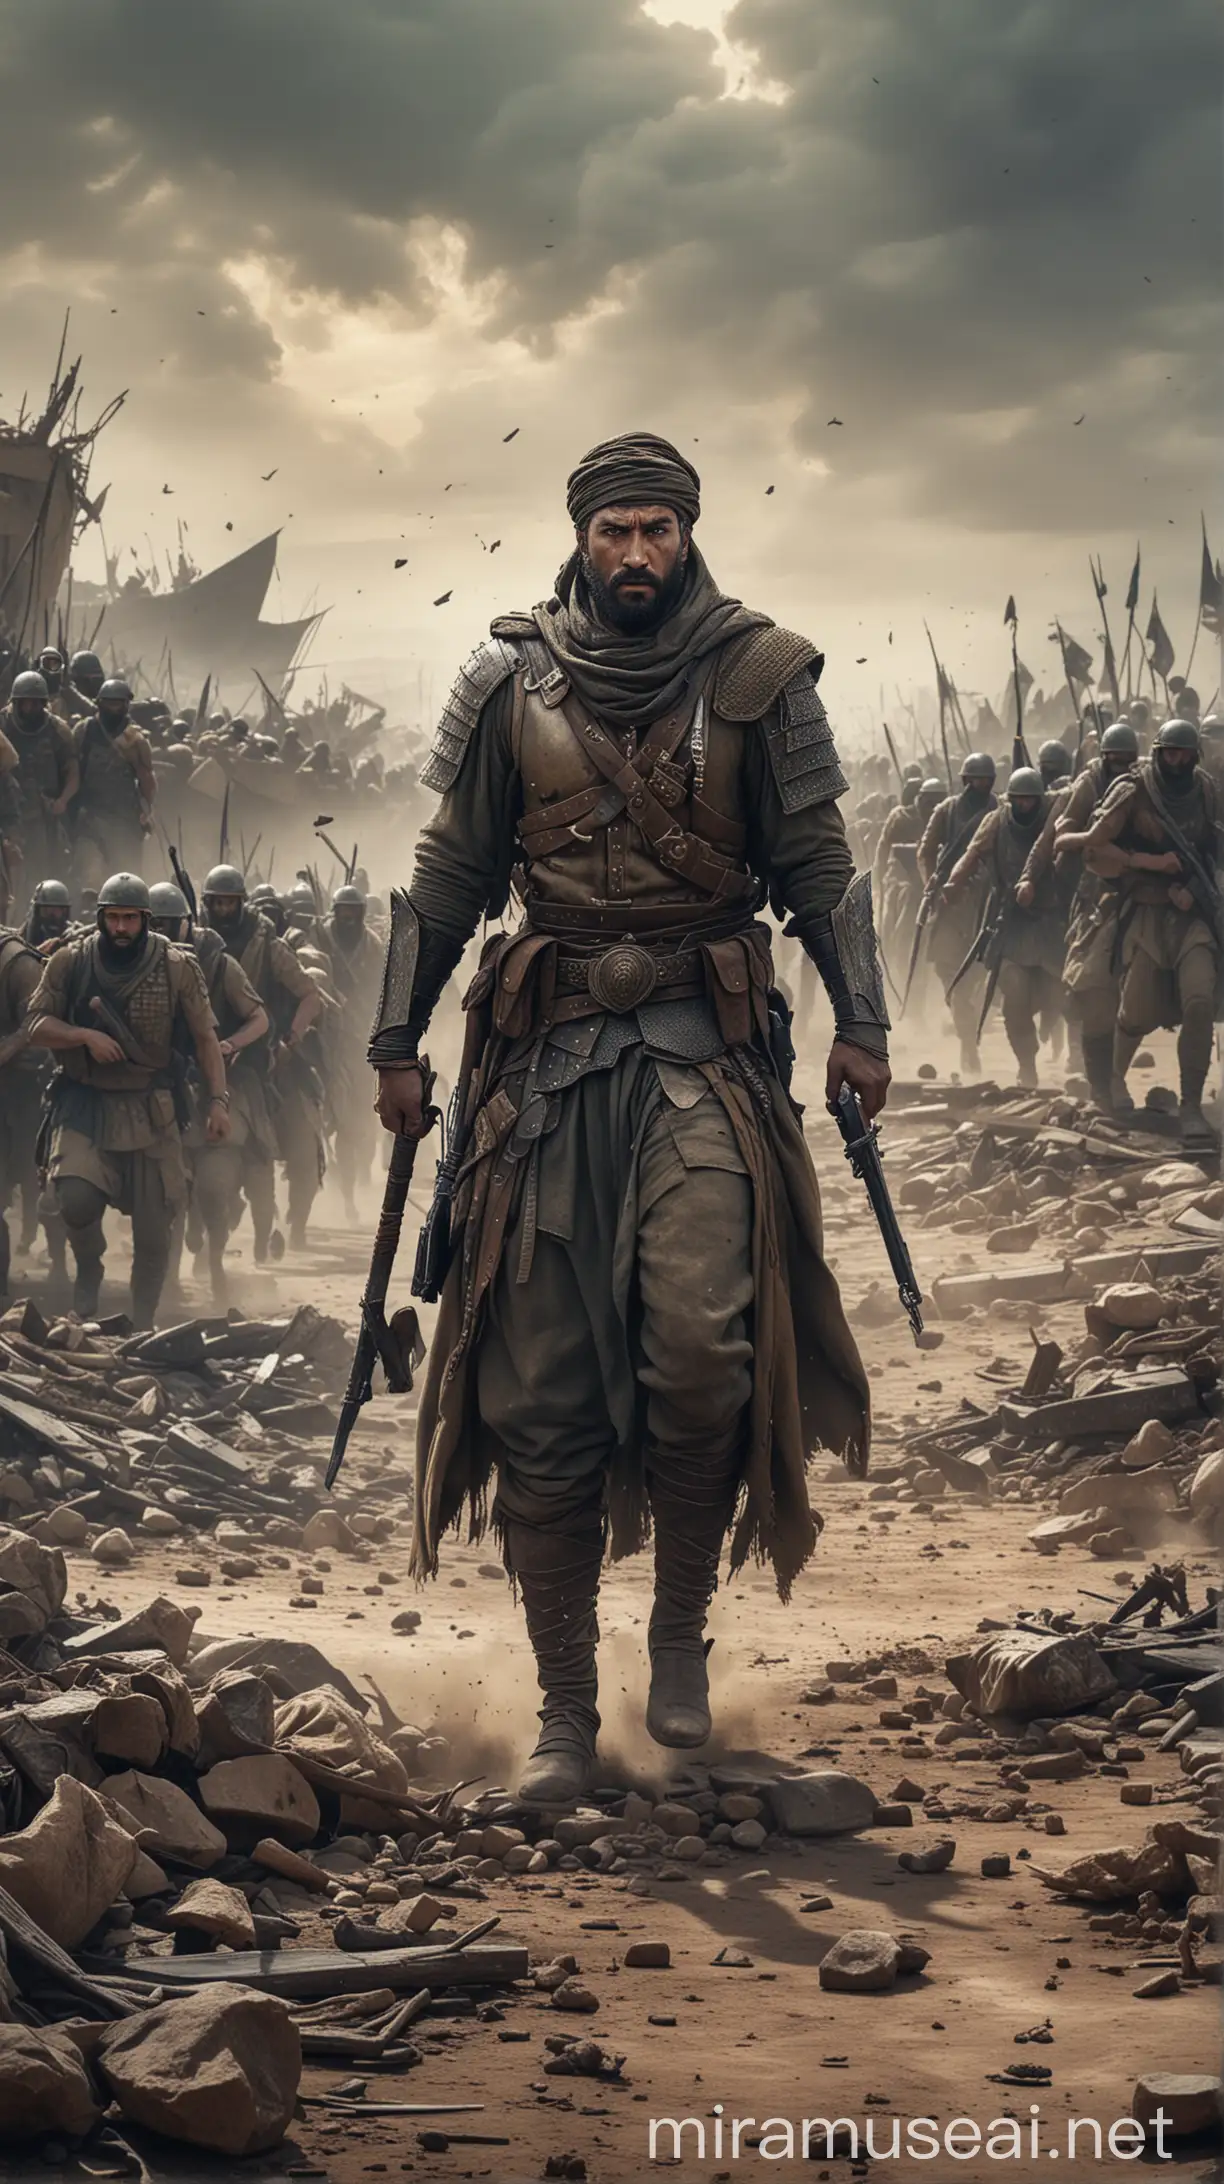 Courageous Warrior Shammah Stands Firm Amidst Battle Chaos